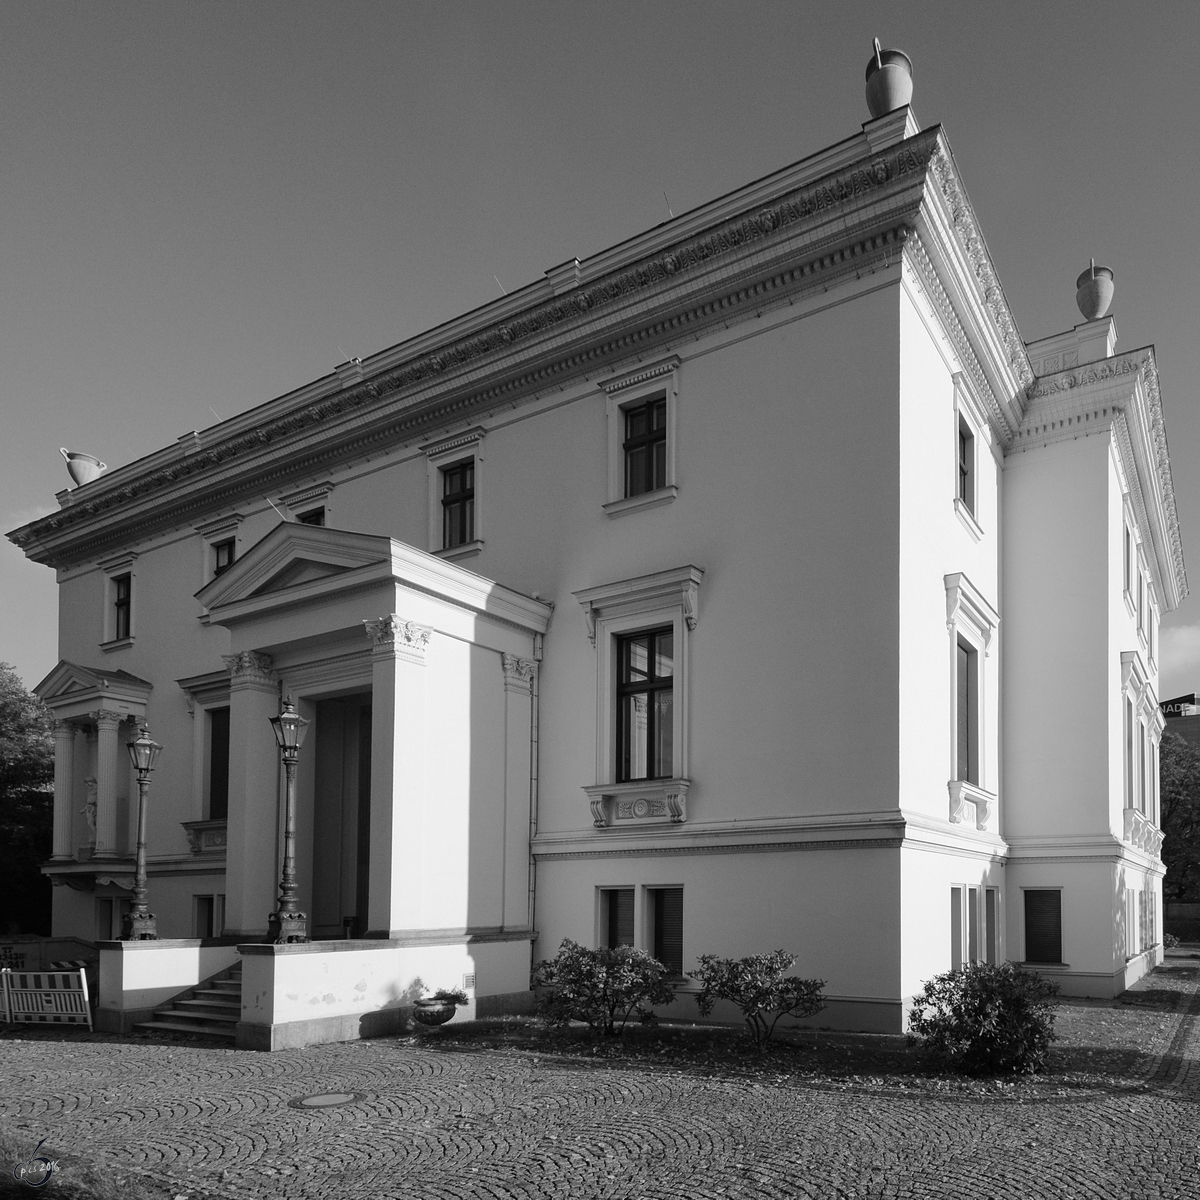 Die Hauptverwaltung und Sitz des Präsidenten der Stiftung Preußischer Kulturbesitz. (Berlin-Tiergarten, Oktober 2013)